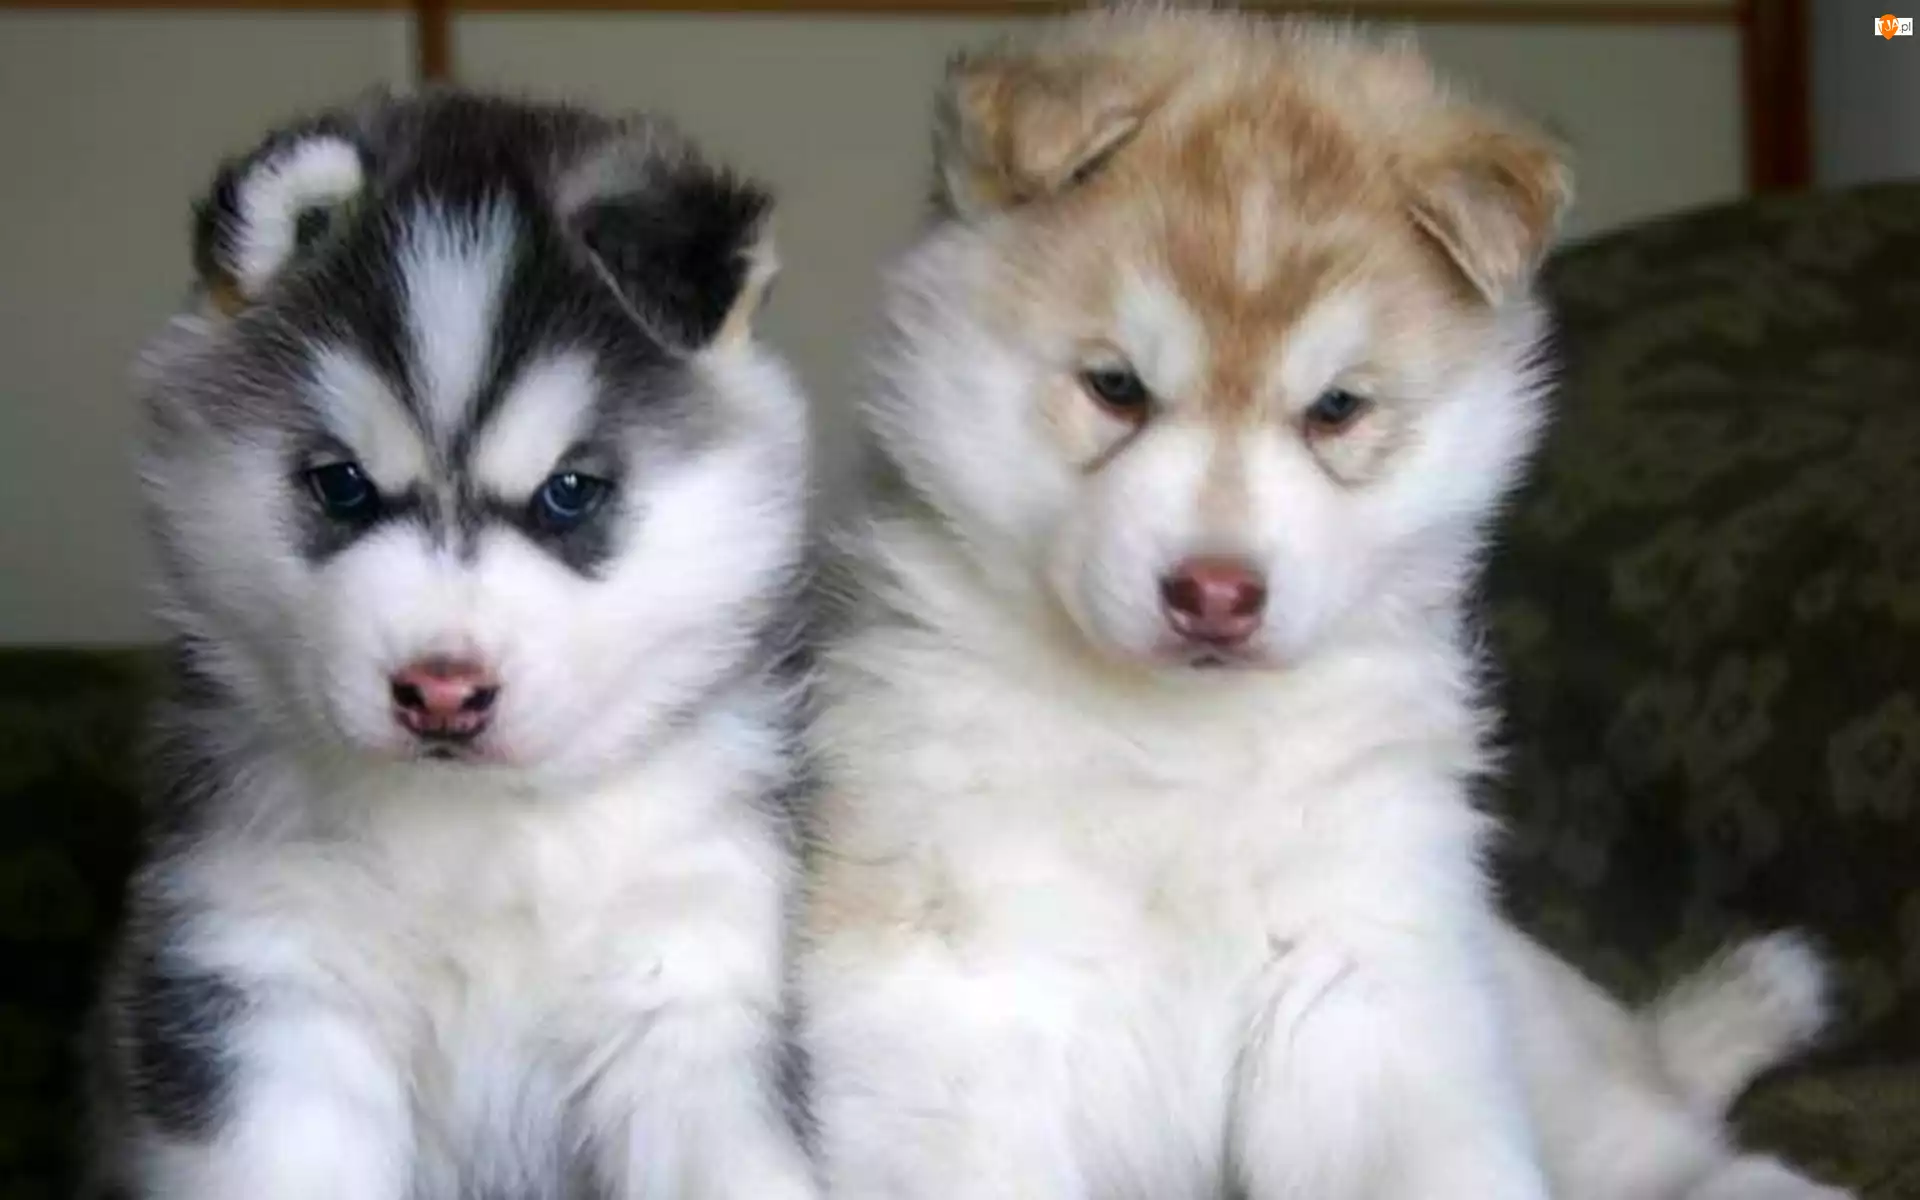 Siberian Husky, dwa, szczeniaki